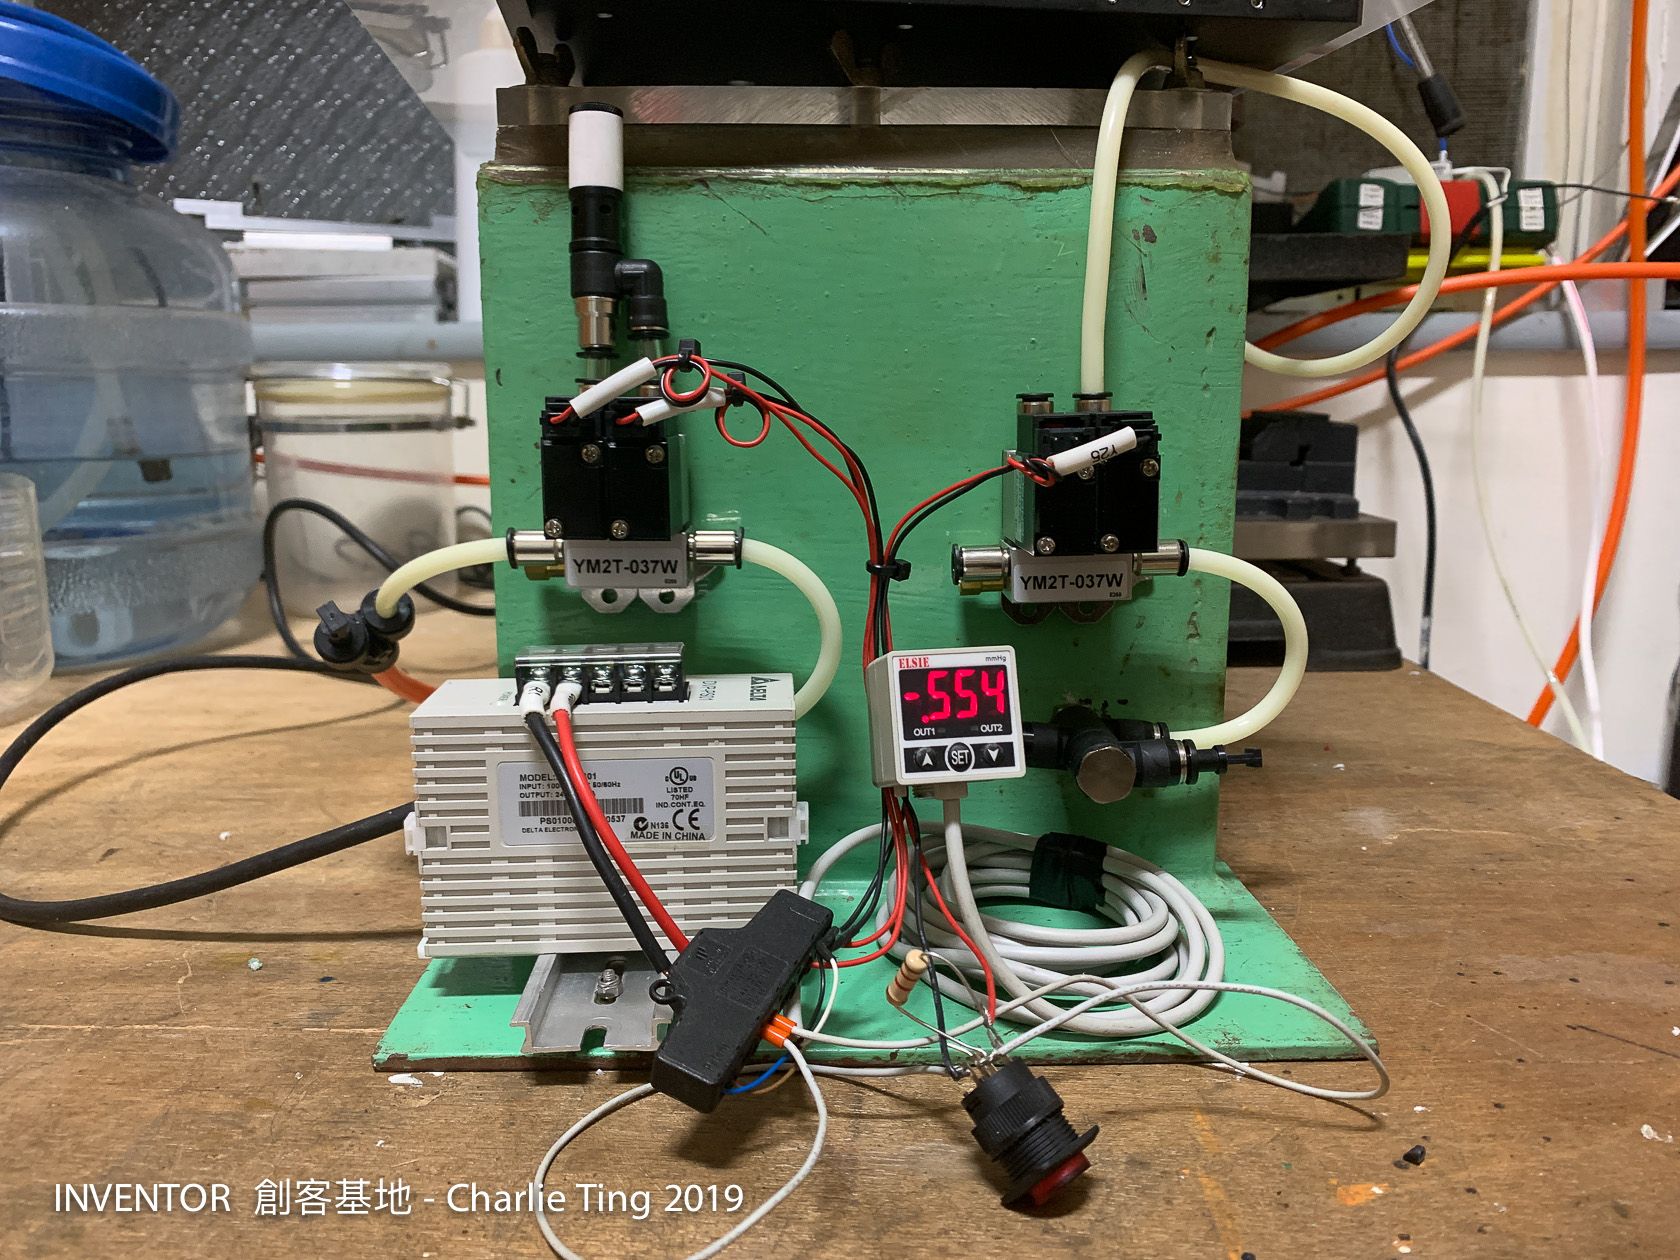 負壓產生系統的構成元件；左上白頭黑身的東西是真空發生器，下方是二個電磁閥；右邊一樣是二個電磁閥（只用到一個）；右下是三通接頭分接到右邊電磁閥和壓力錶；左下為24V電源；前方黑色方塊為配線盤[感謝 Eric Lin]；前方按鍵為真空吸盤啟動開關。